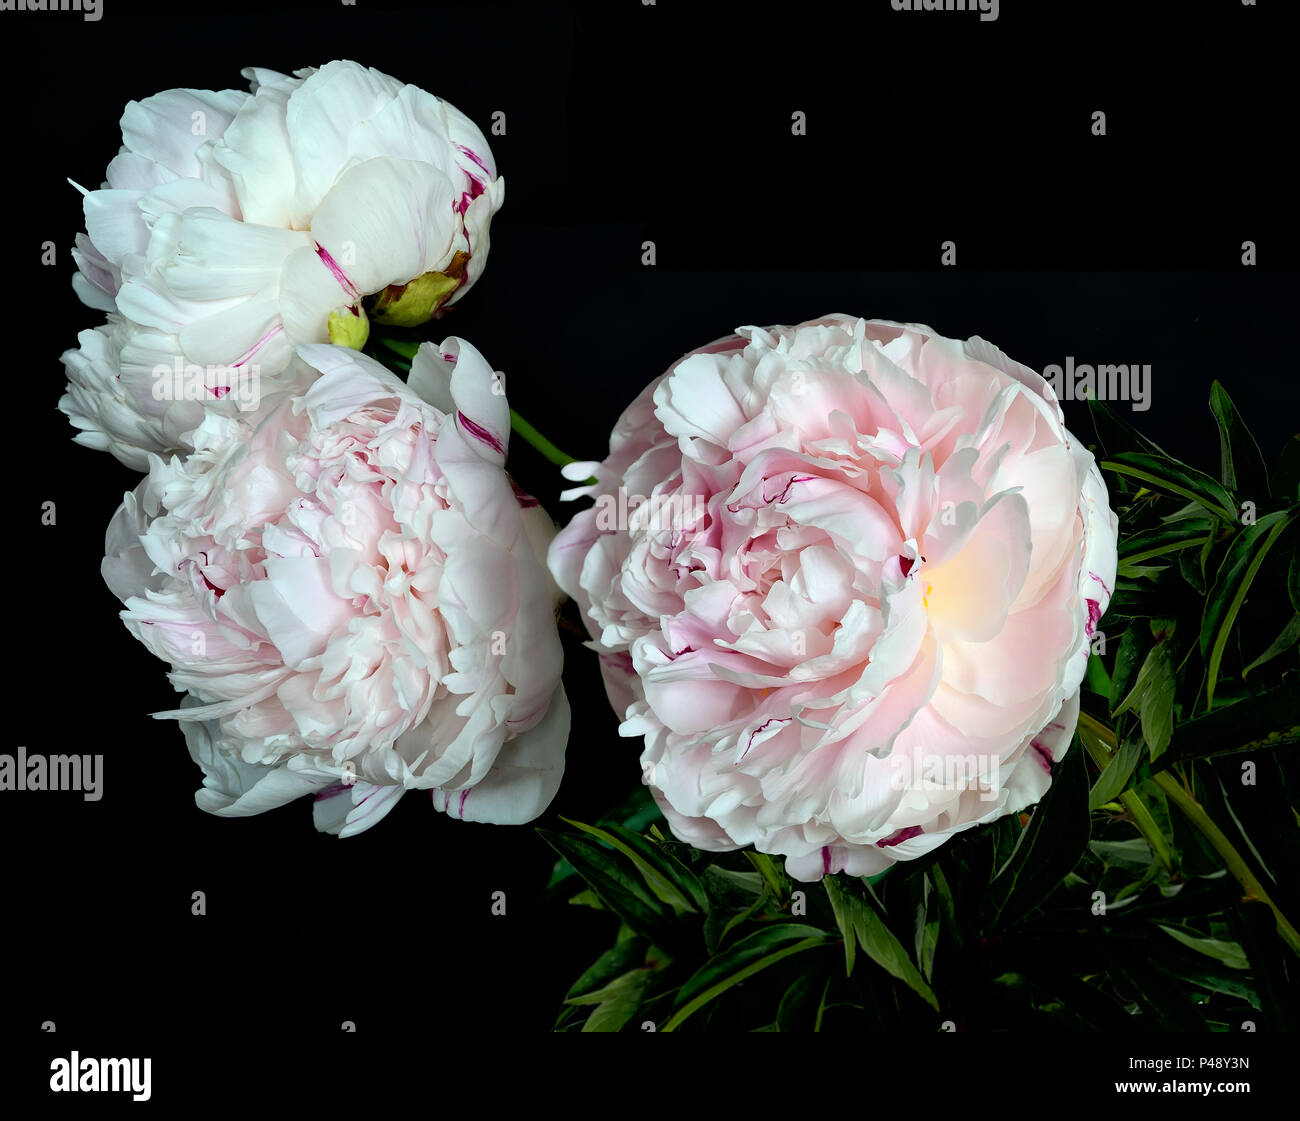 Magnifique bouquet de pivoines rose-blanc doux close up sur fond noir avec de l'espace isolé pour le texte. Des fleurs avec des pétales délicats et délicate Banque D'Images